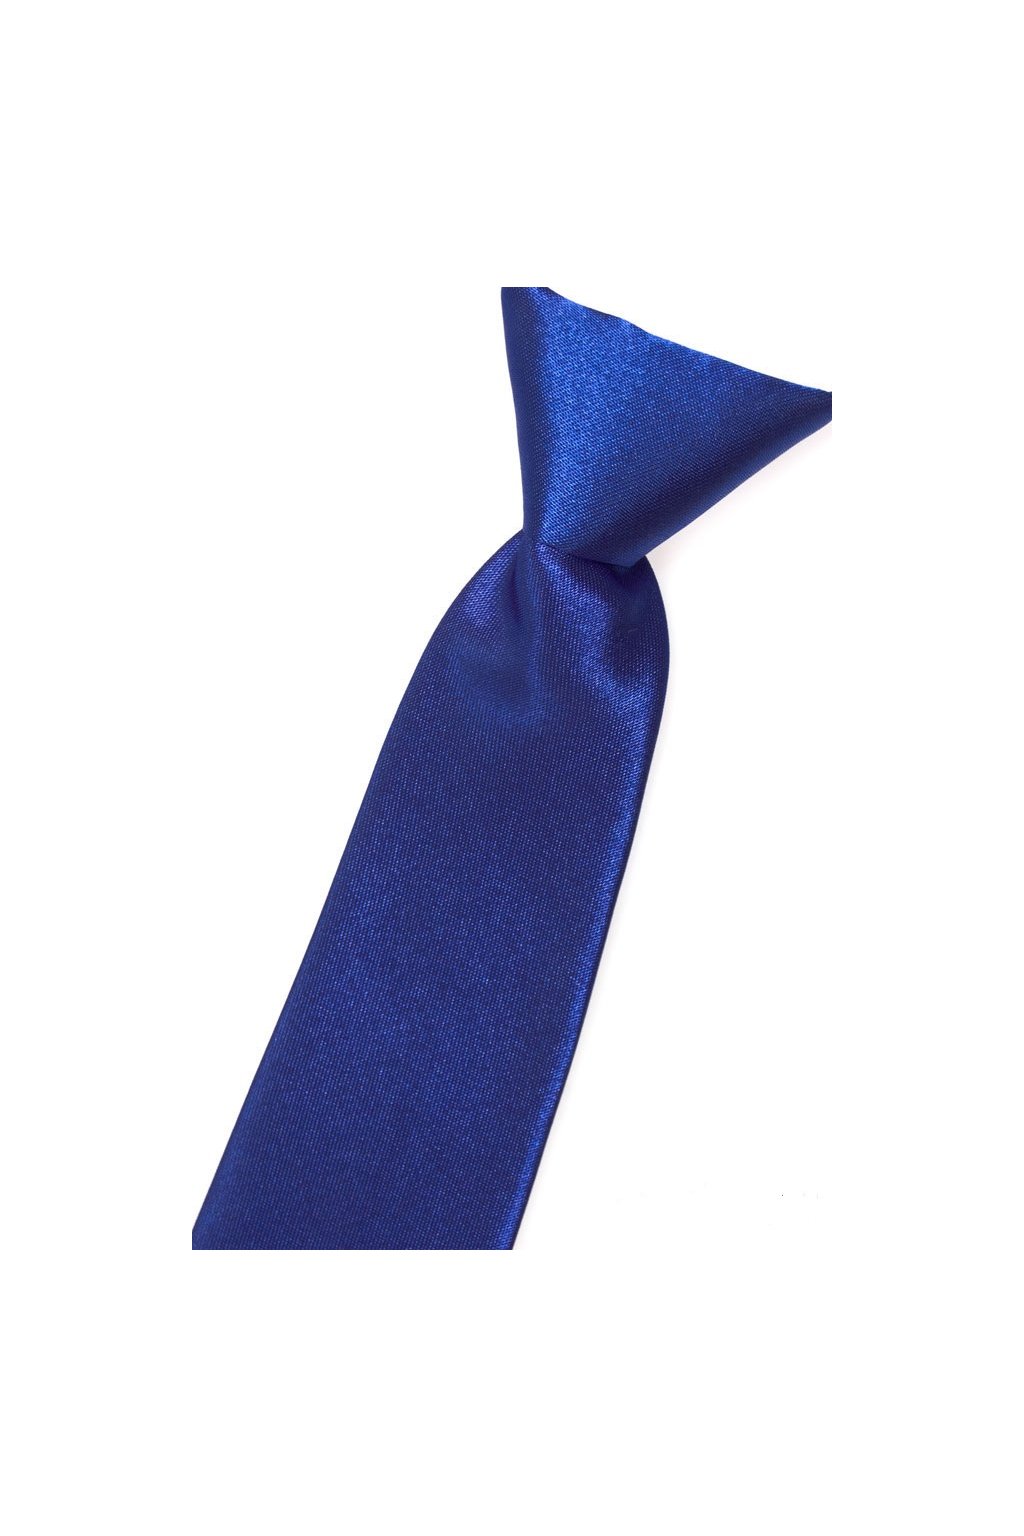 Chlapecká kravata Avantgard - modrá